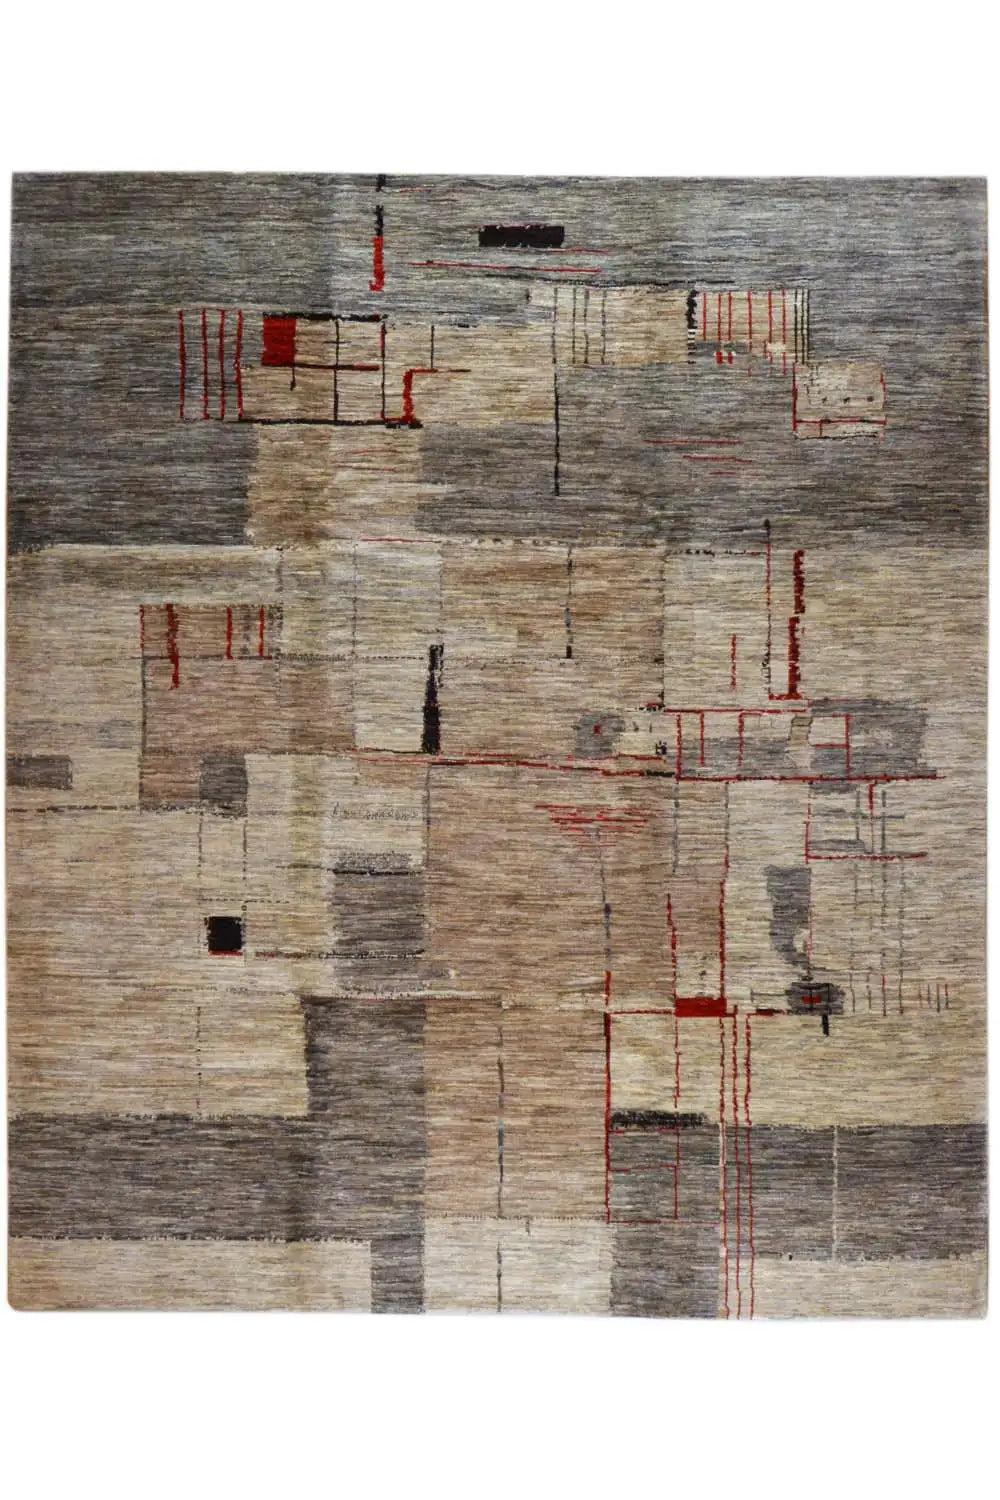 Gabbeh Lori Iran - 1401387 (289x248cm) - German Carpet Shop